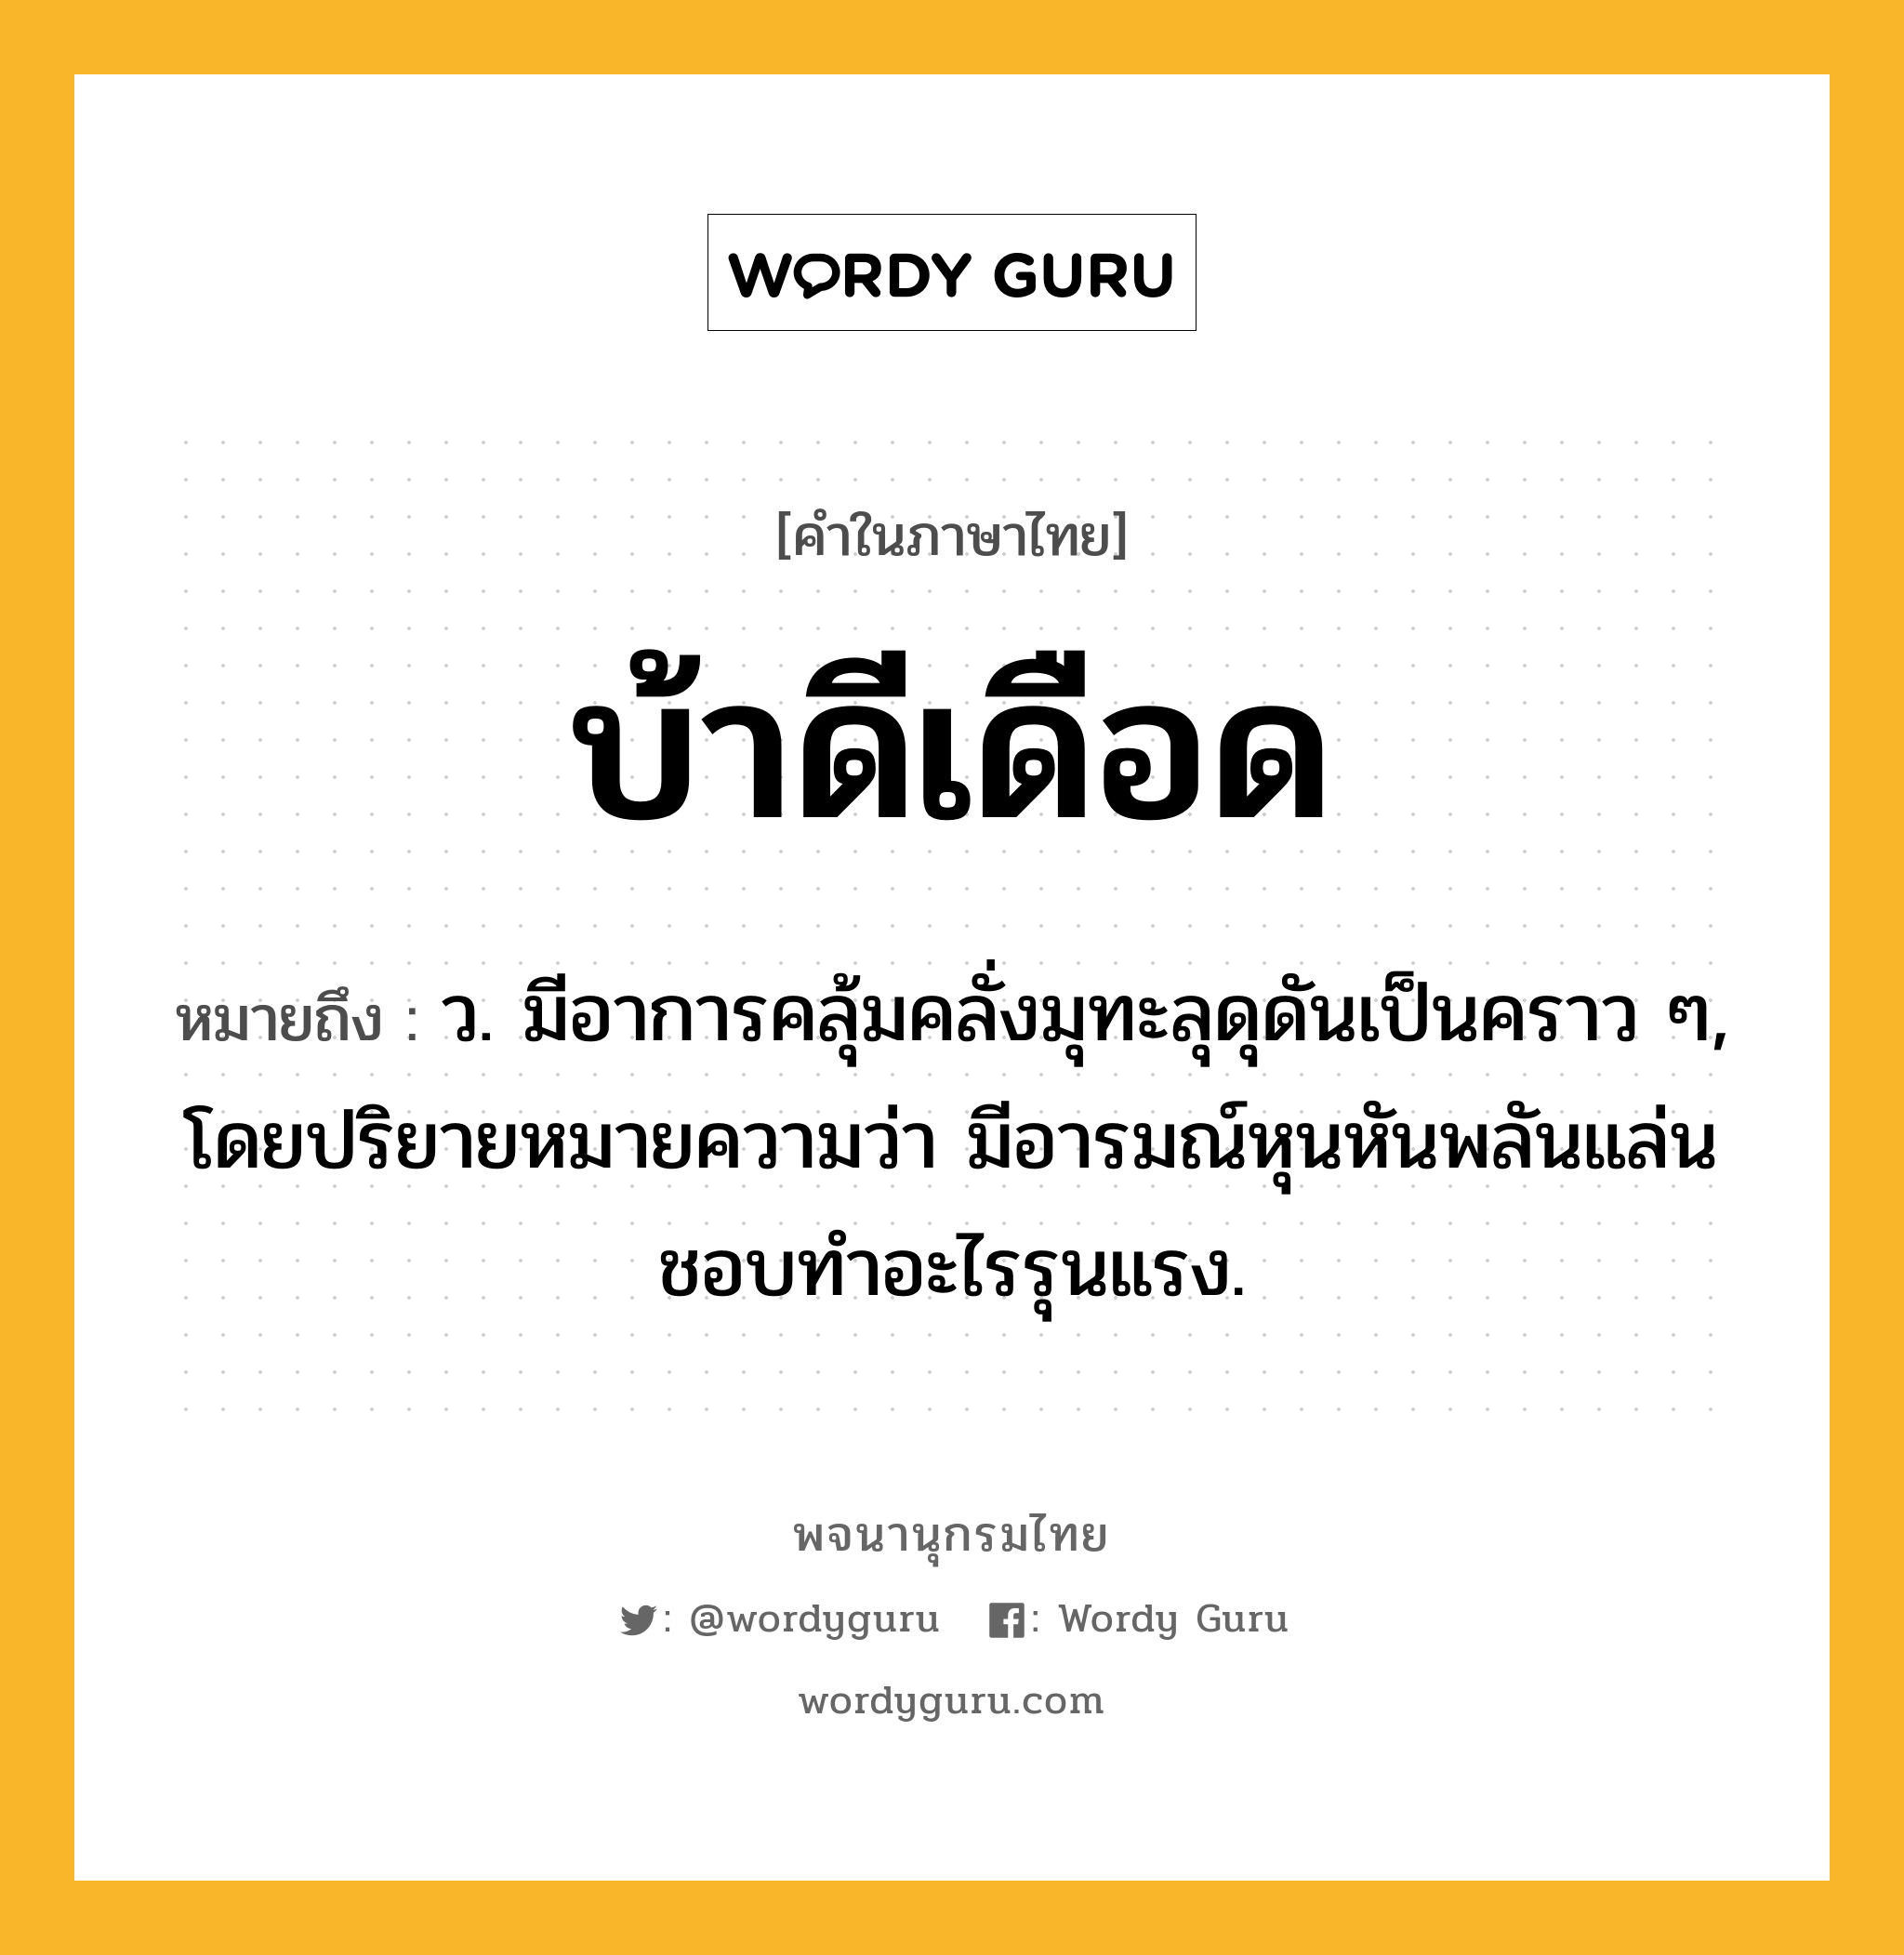 บ้าดีเดือด ความหมาย หมายถึงอะไร?, คำในภาษาไทย บ้าดีเดือด หมายถึง ว. มีอาการคลุ้มคลั่งมุทะลุดุดันเป็นคราว ๆ, โดยปริยายหมายความว่า มีอารมณ์หุนหันพลันแล่นชอบทําอะไรรุนแรง.